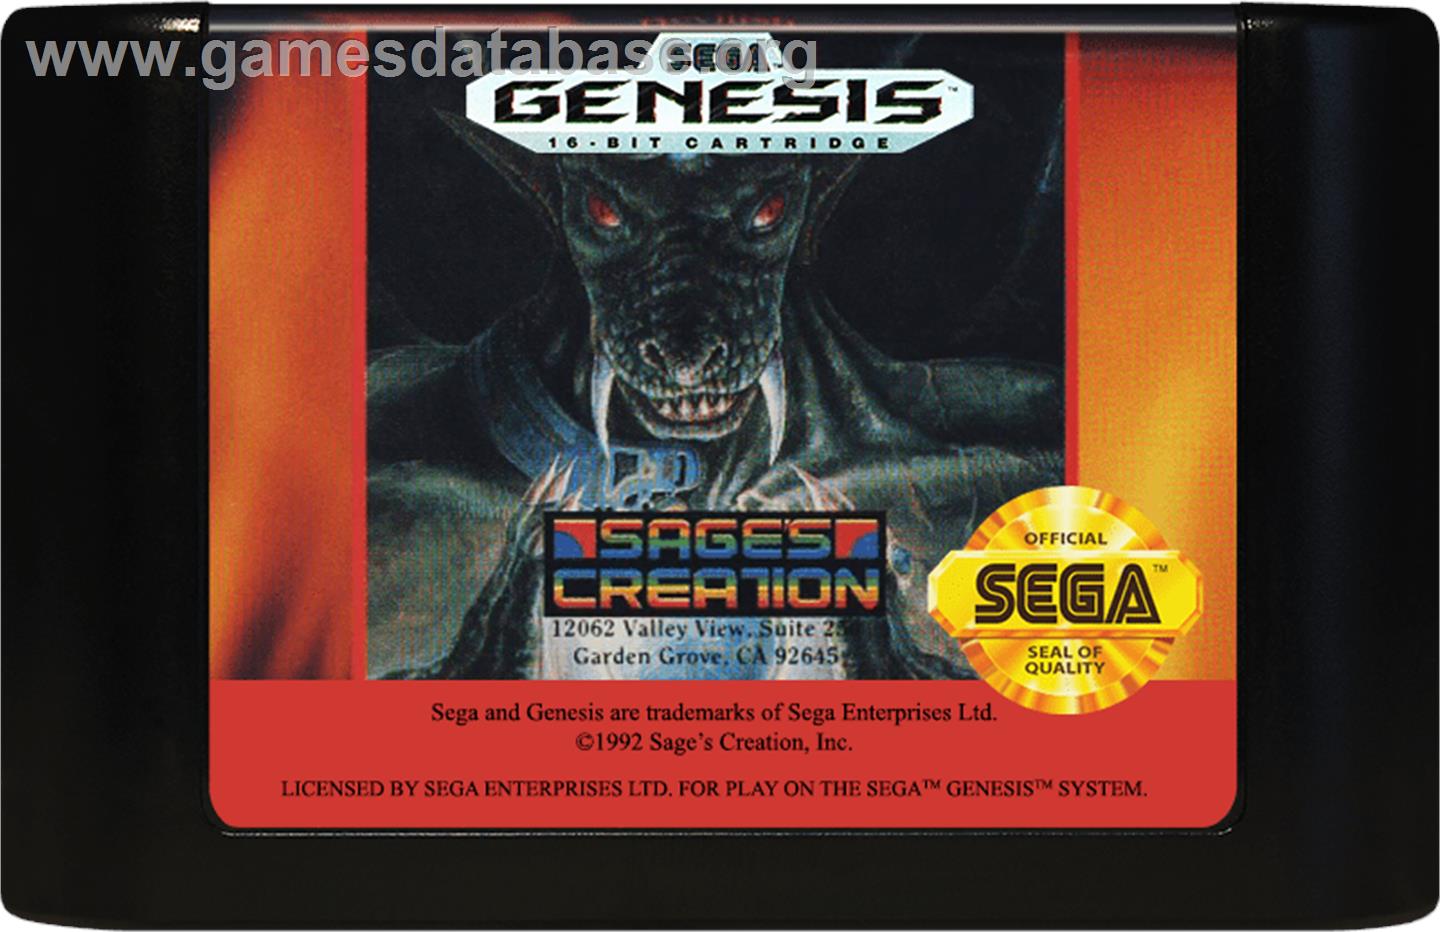 Devilish - Sega Genesis - Artwork - Cartridge